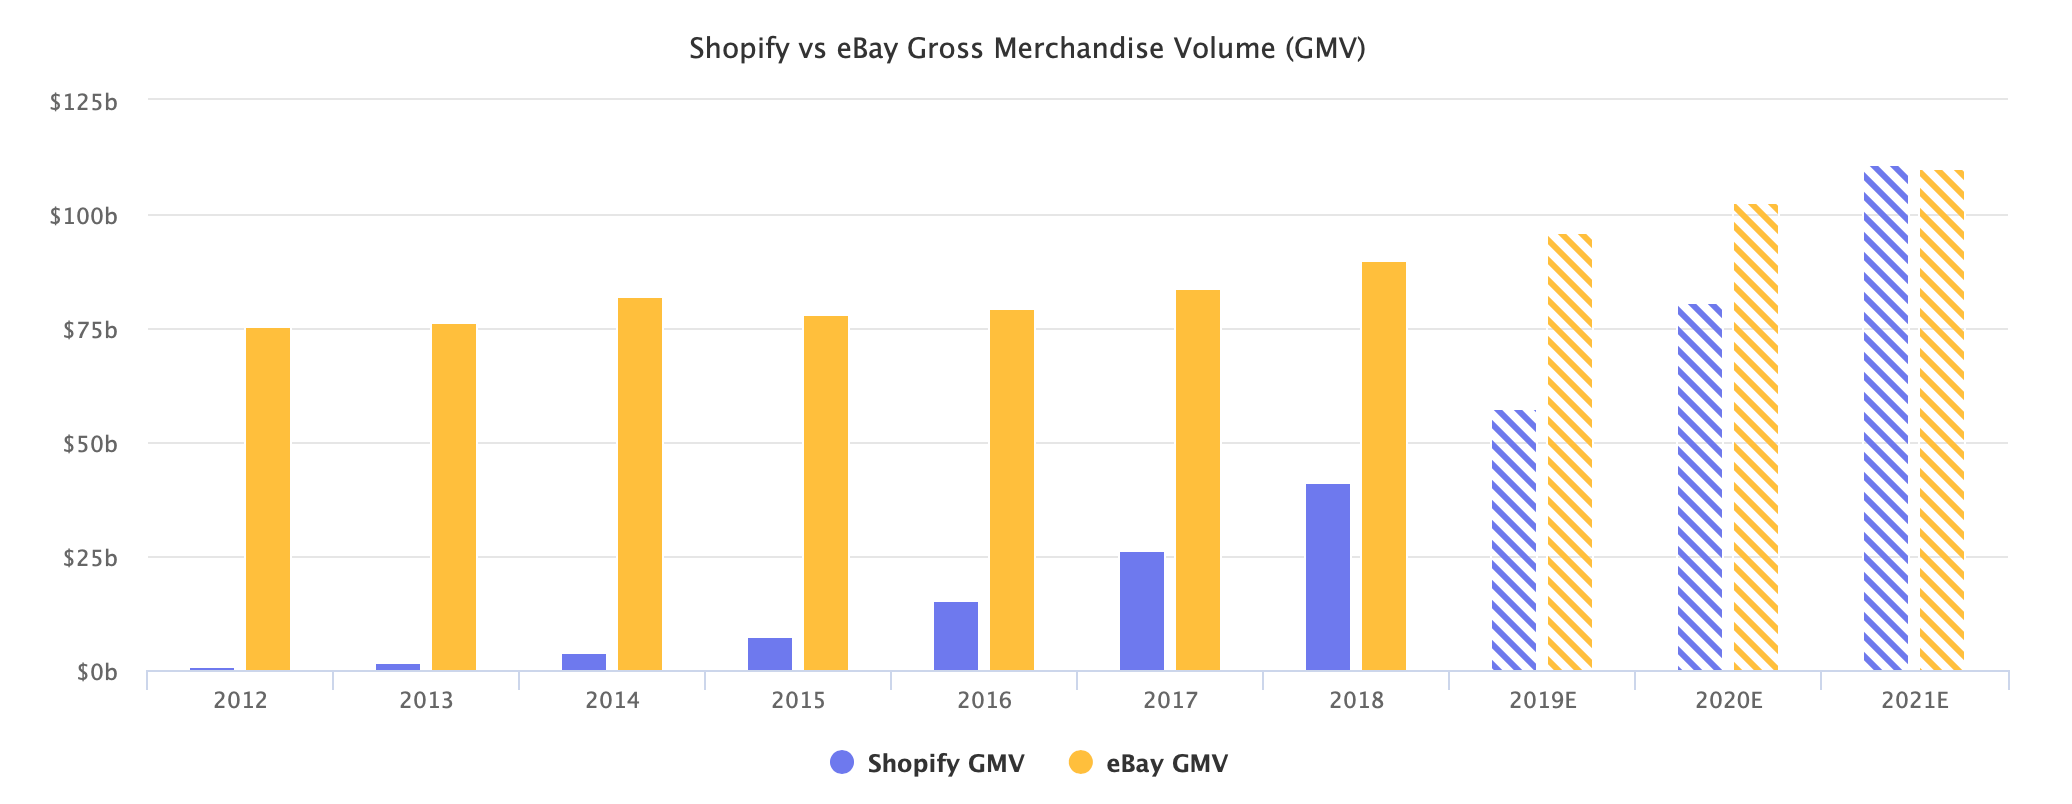 Shopify vs eBay Gross Merchandise Volume (GMV)